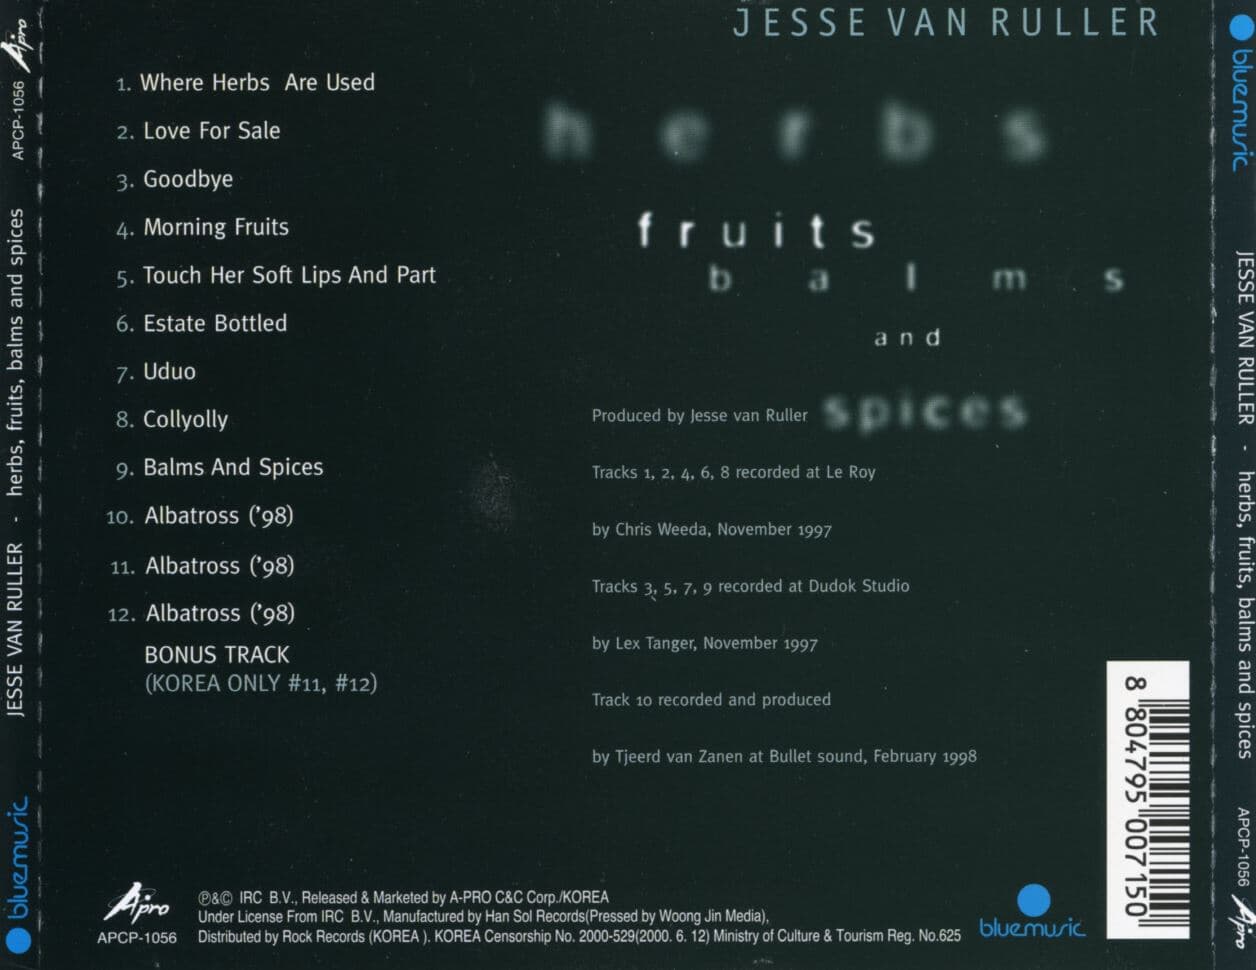 예세 반 룰레 - Jesse Van Ruller - Herbs, Fruits, Balms And Spices